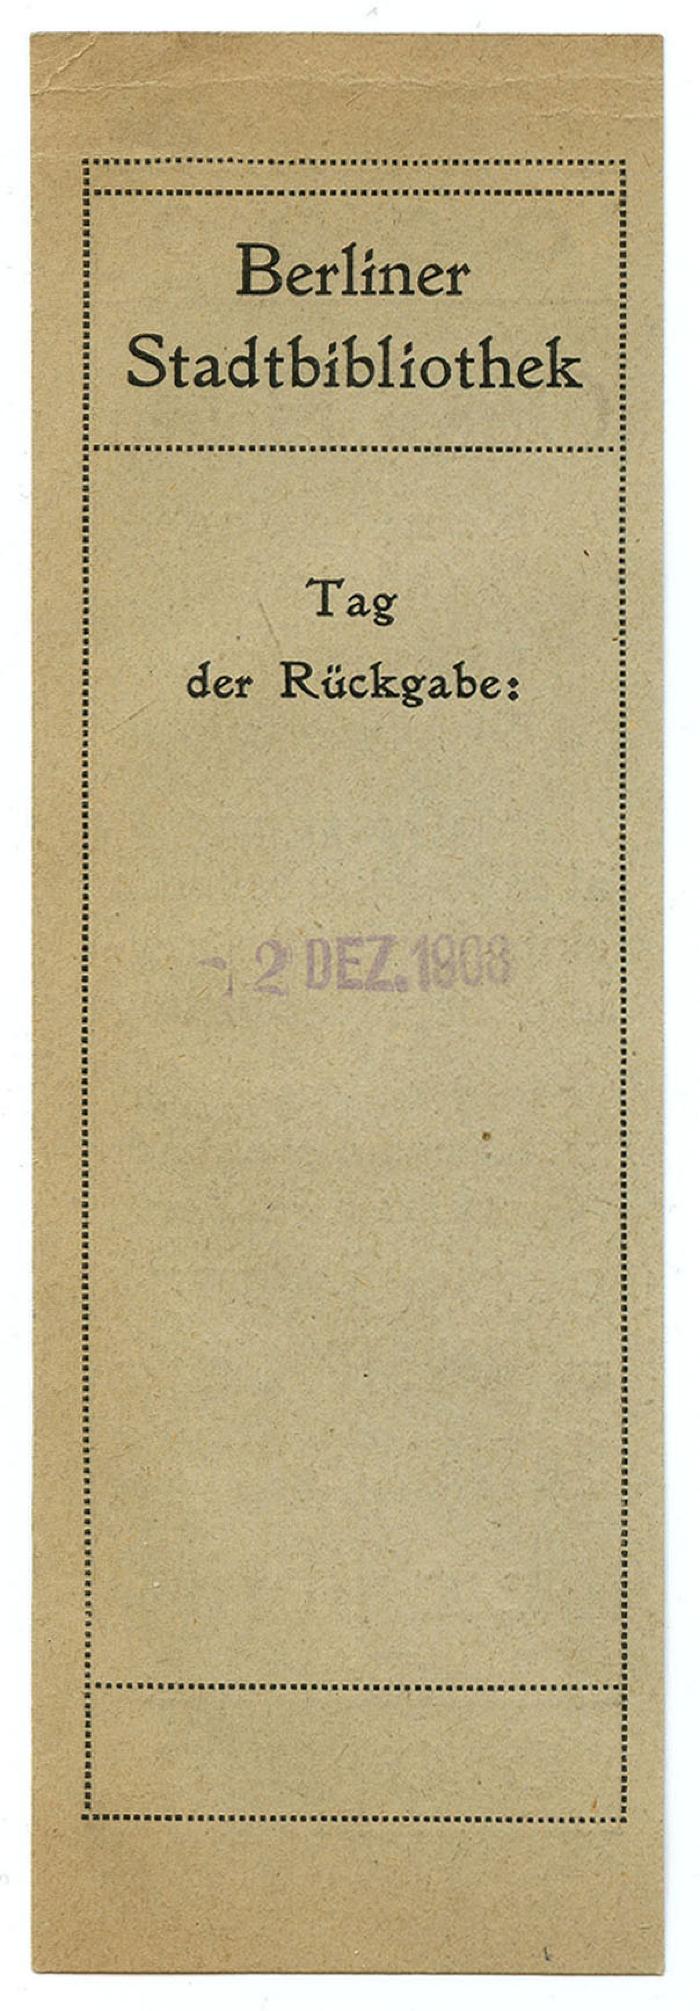 Exlibris-Nr.  149;- (Berliner Stadtbibliothek), Papier: Name, Datum; 'Berliner Stadtbibliothek
Tag der Rückgabe:
[2 Dez. 1908]'.  (Prototyp)